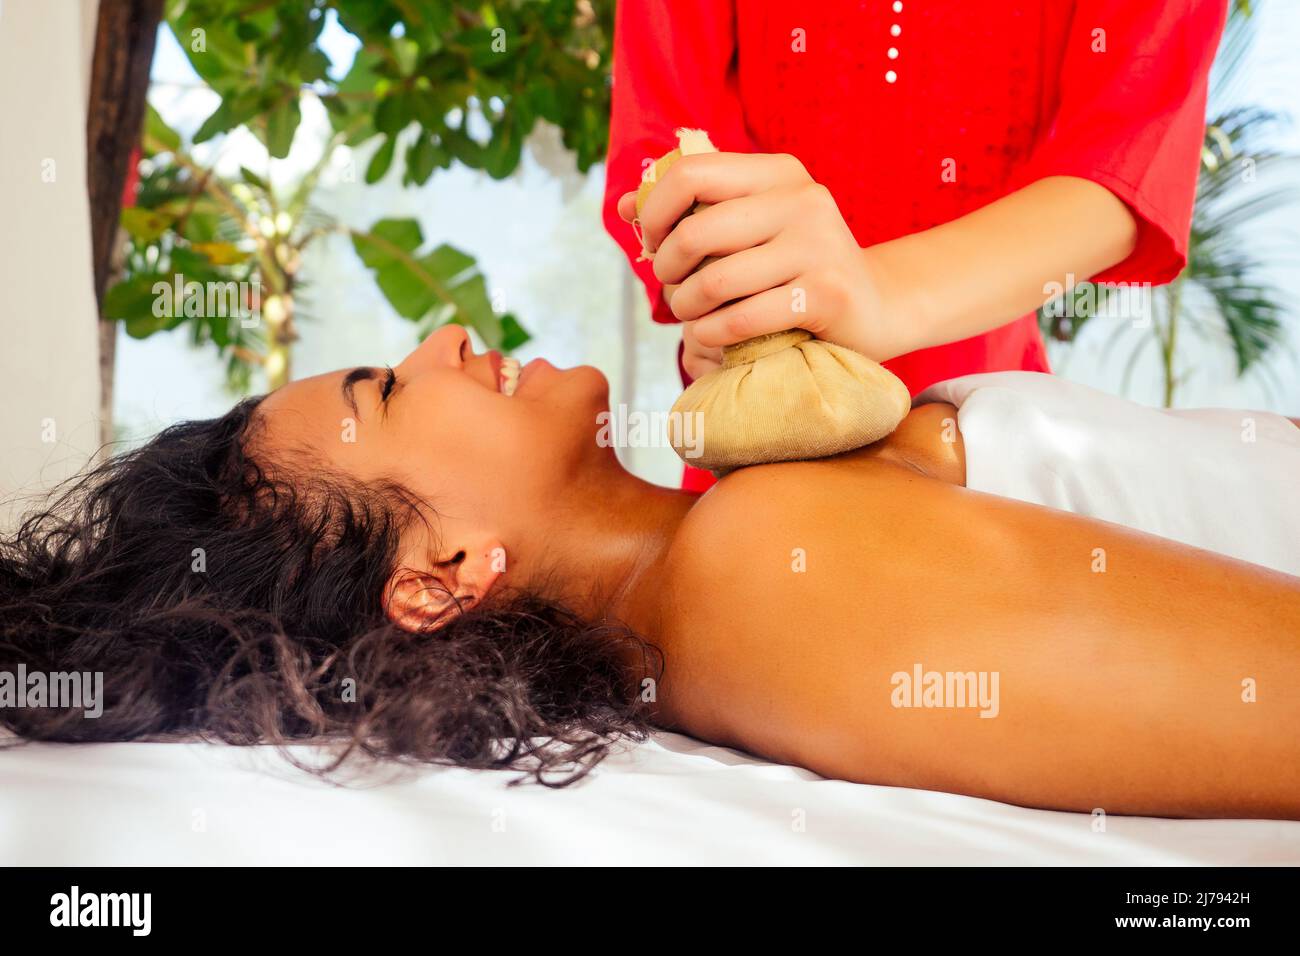 Femme indienne recevant un massage ayurvédique dans un complexe tropical en Inde Goa Banque D'Images